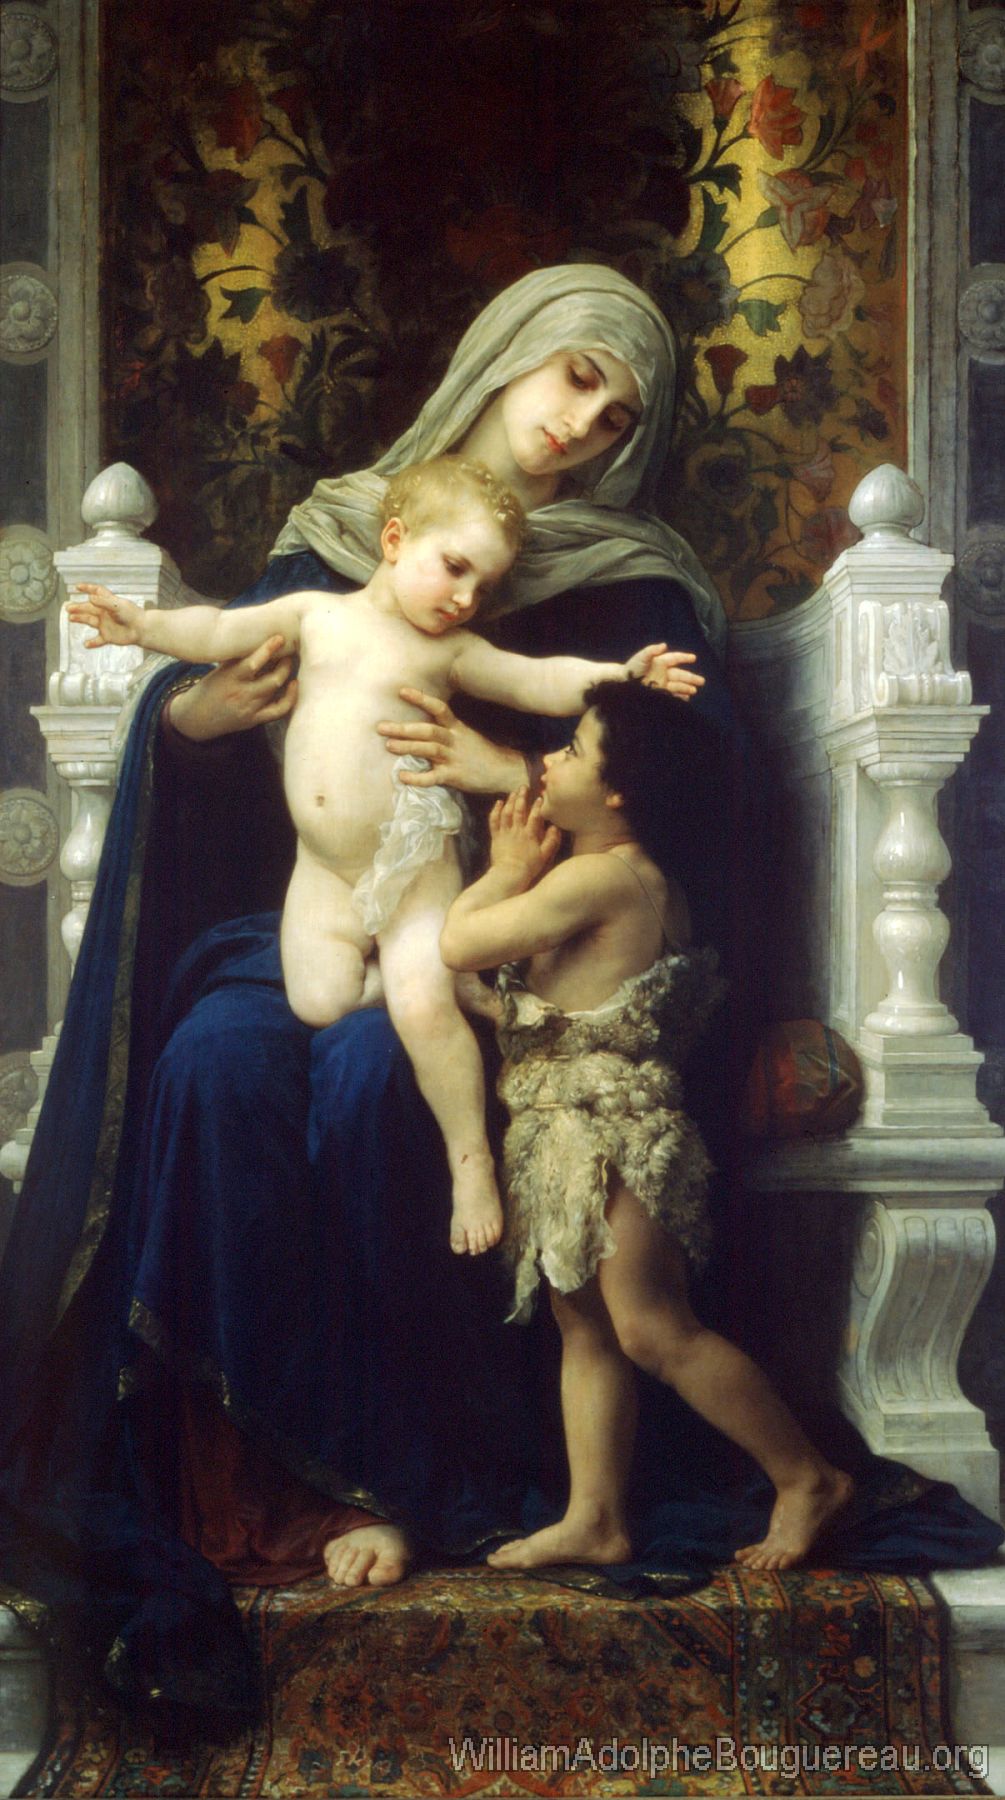 La Vierge, L'Enfant Jesus et Saint Jean Baptiste (The Virgin, Baby Jesus and Saint John the Baptist)